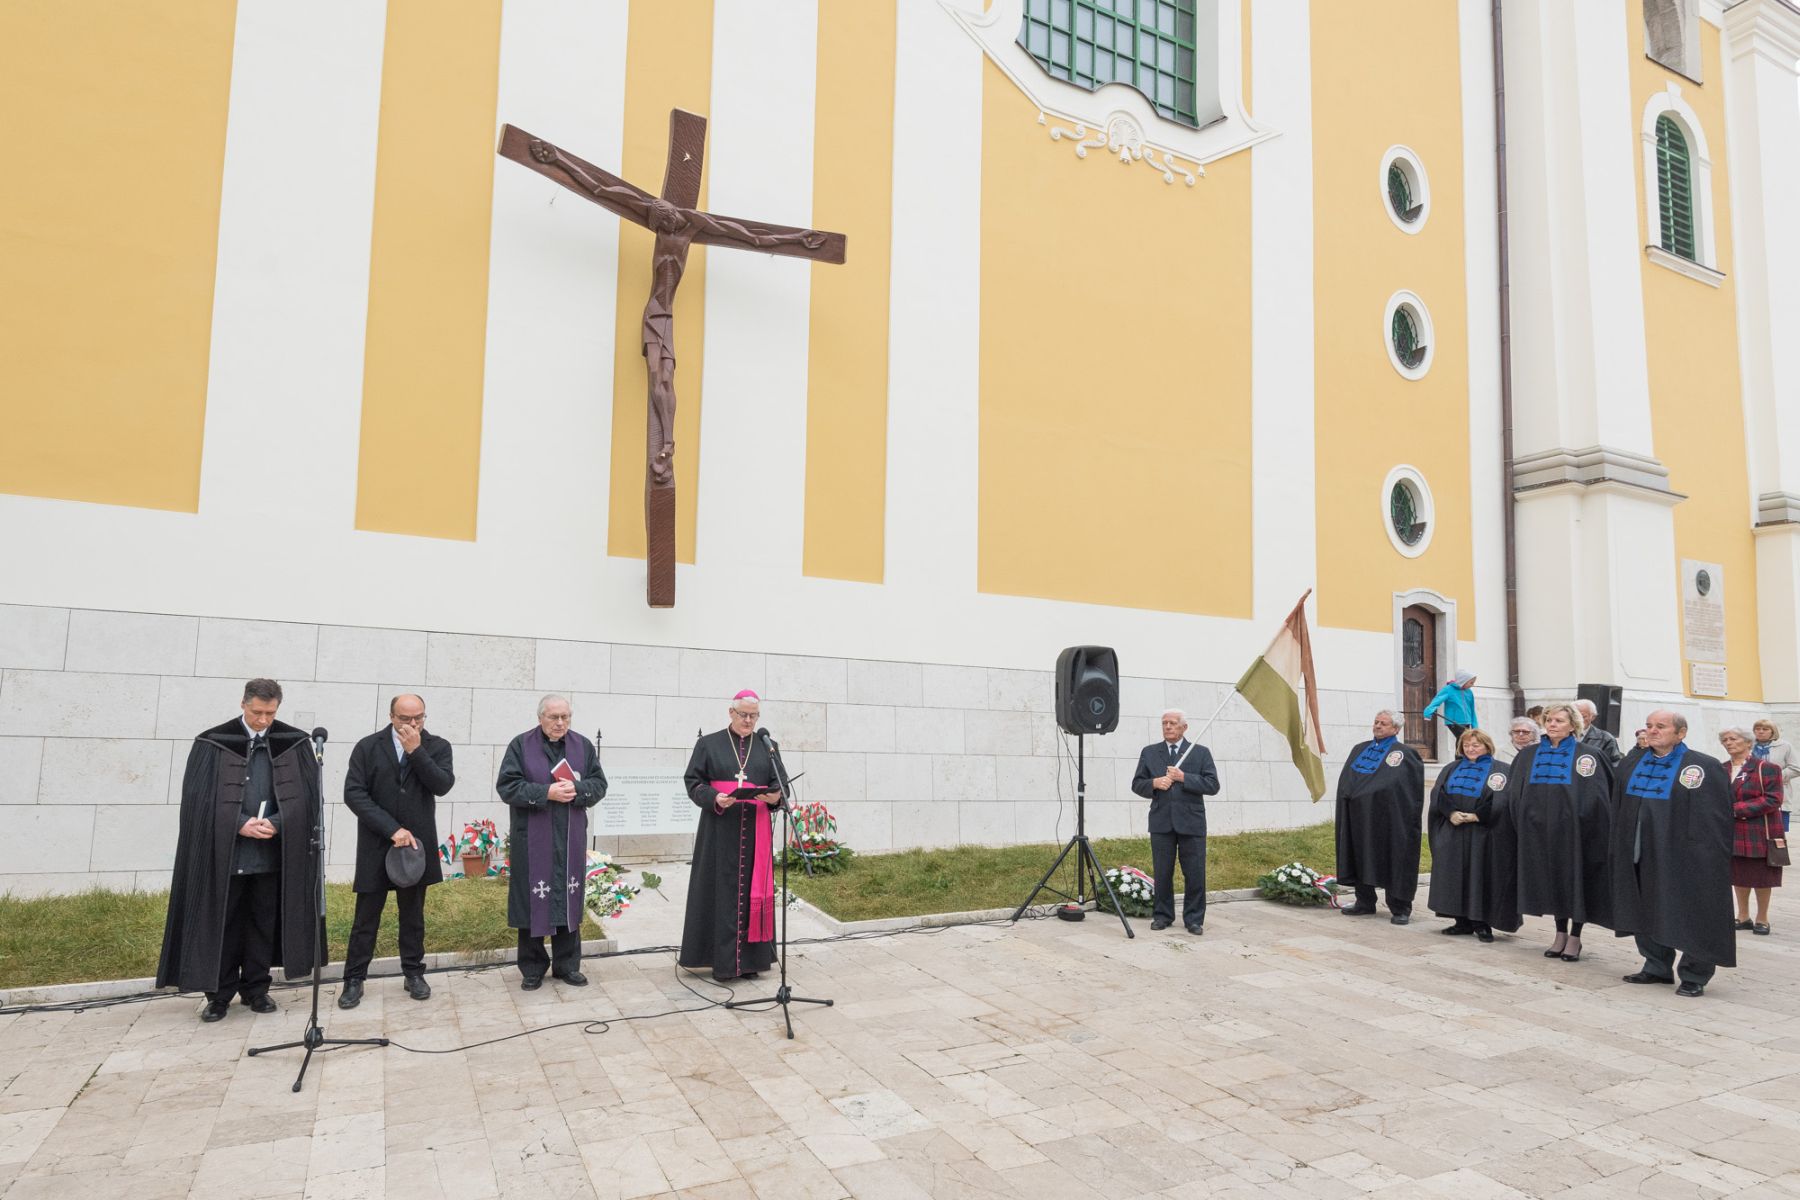 1956 - a Bazilikánál emlékeztek és imádkoztak a történelmi egyházak